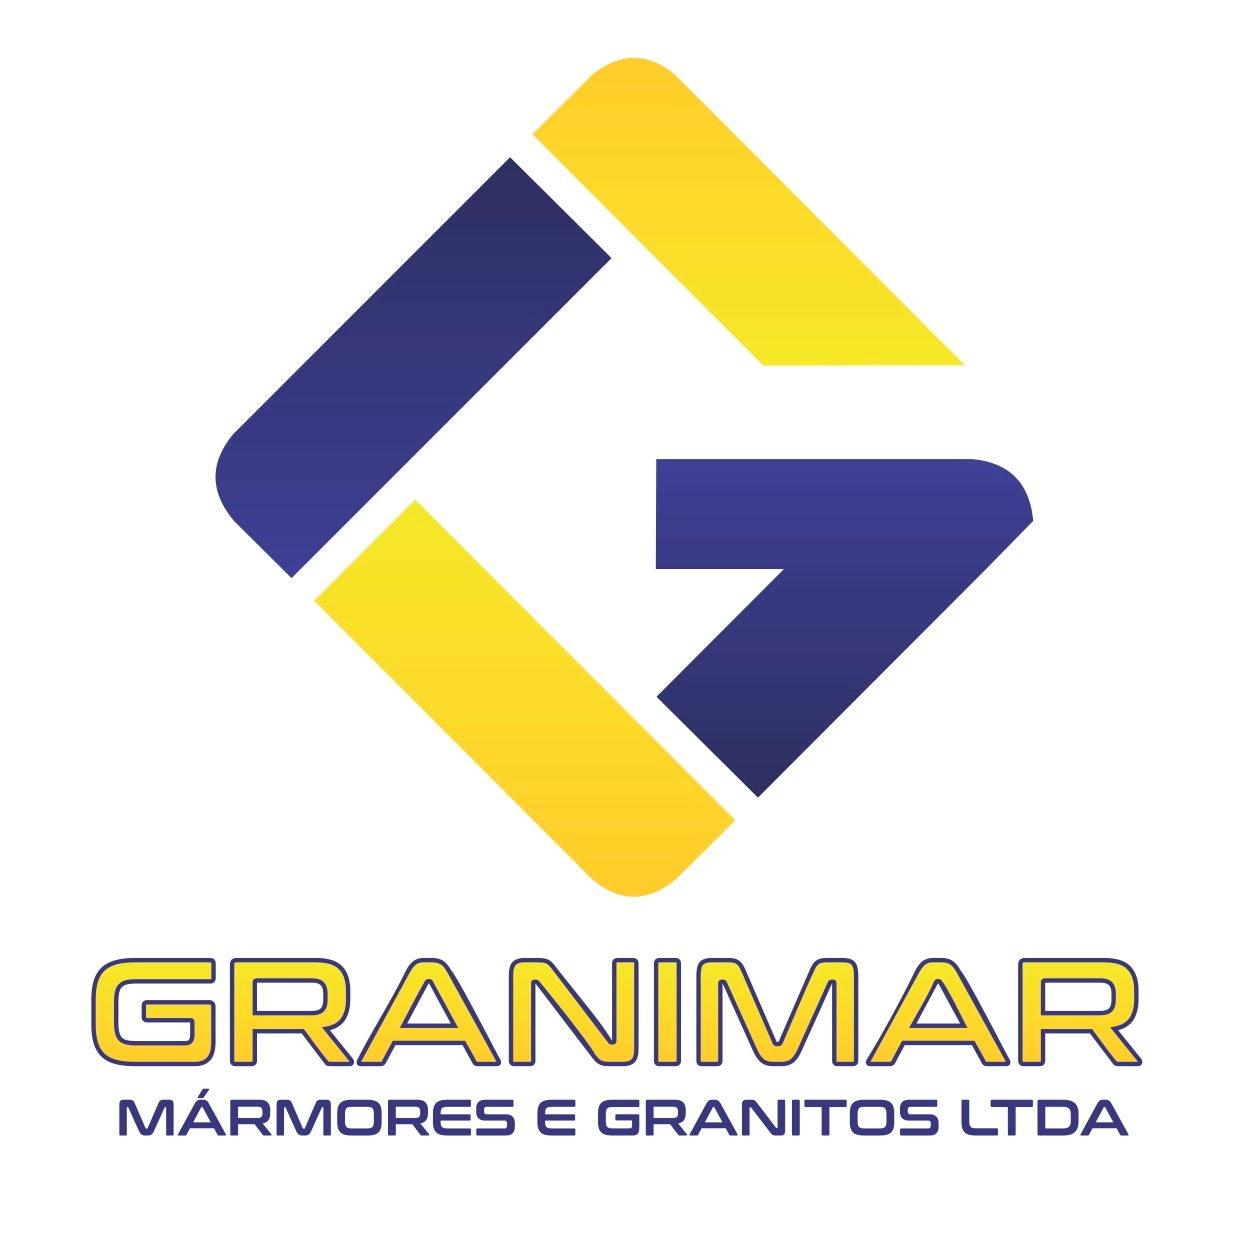 GRANIMAR MÁRMORES E GRANITOS - (66) 99972-7680 - NOVA INFORTEL!